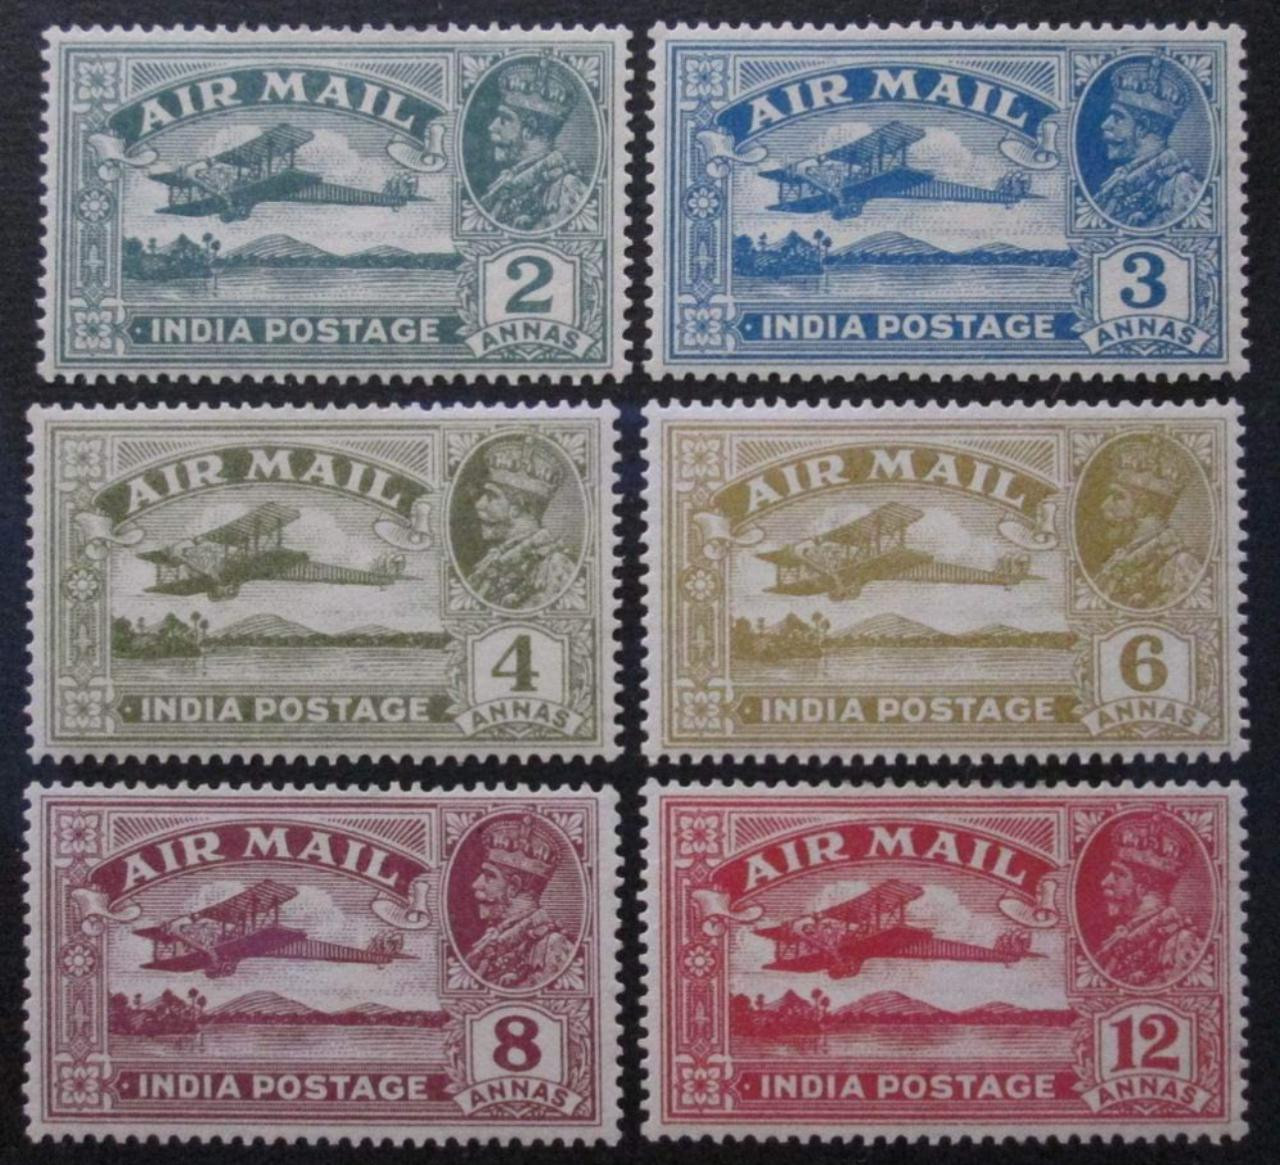 India 1929 KGV Airmail Set Mint White Gum Catalog Value 4500/-